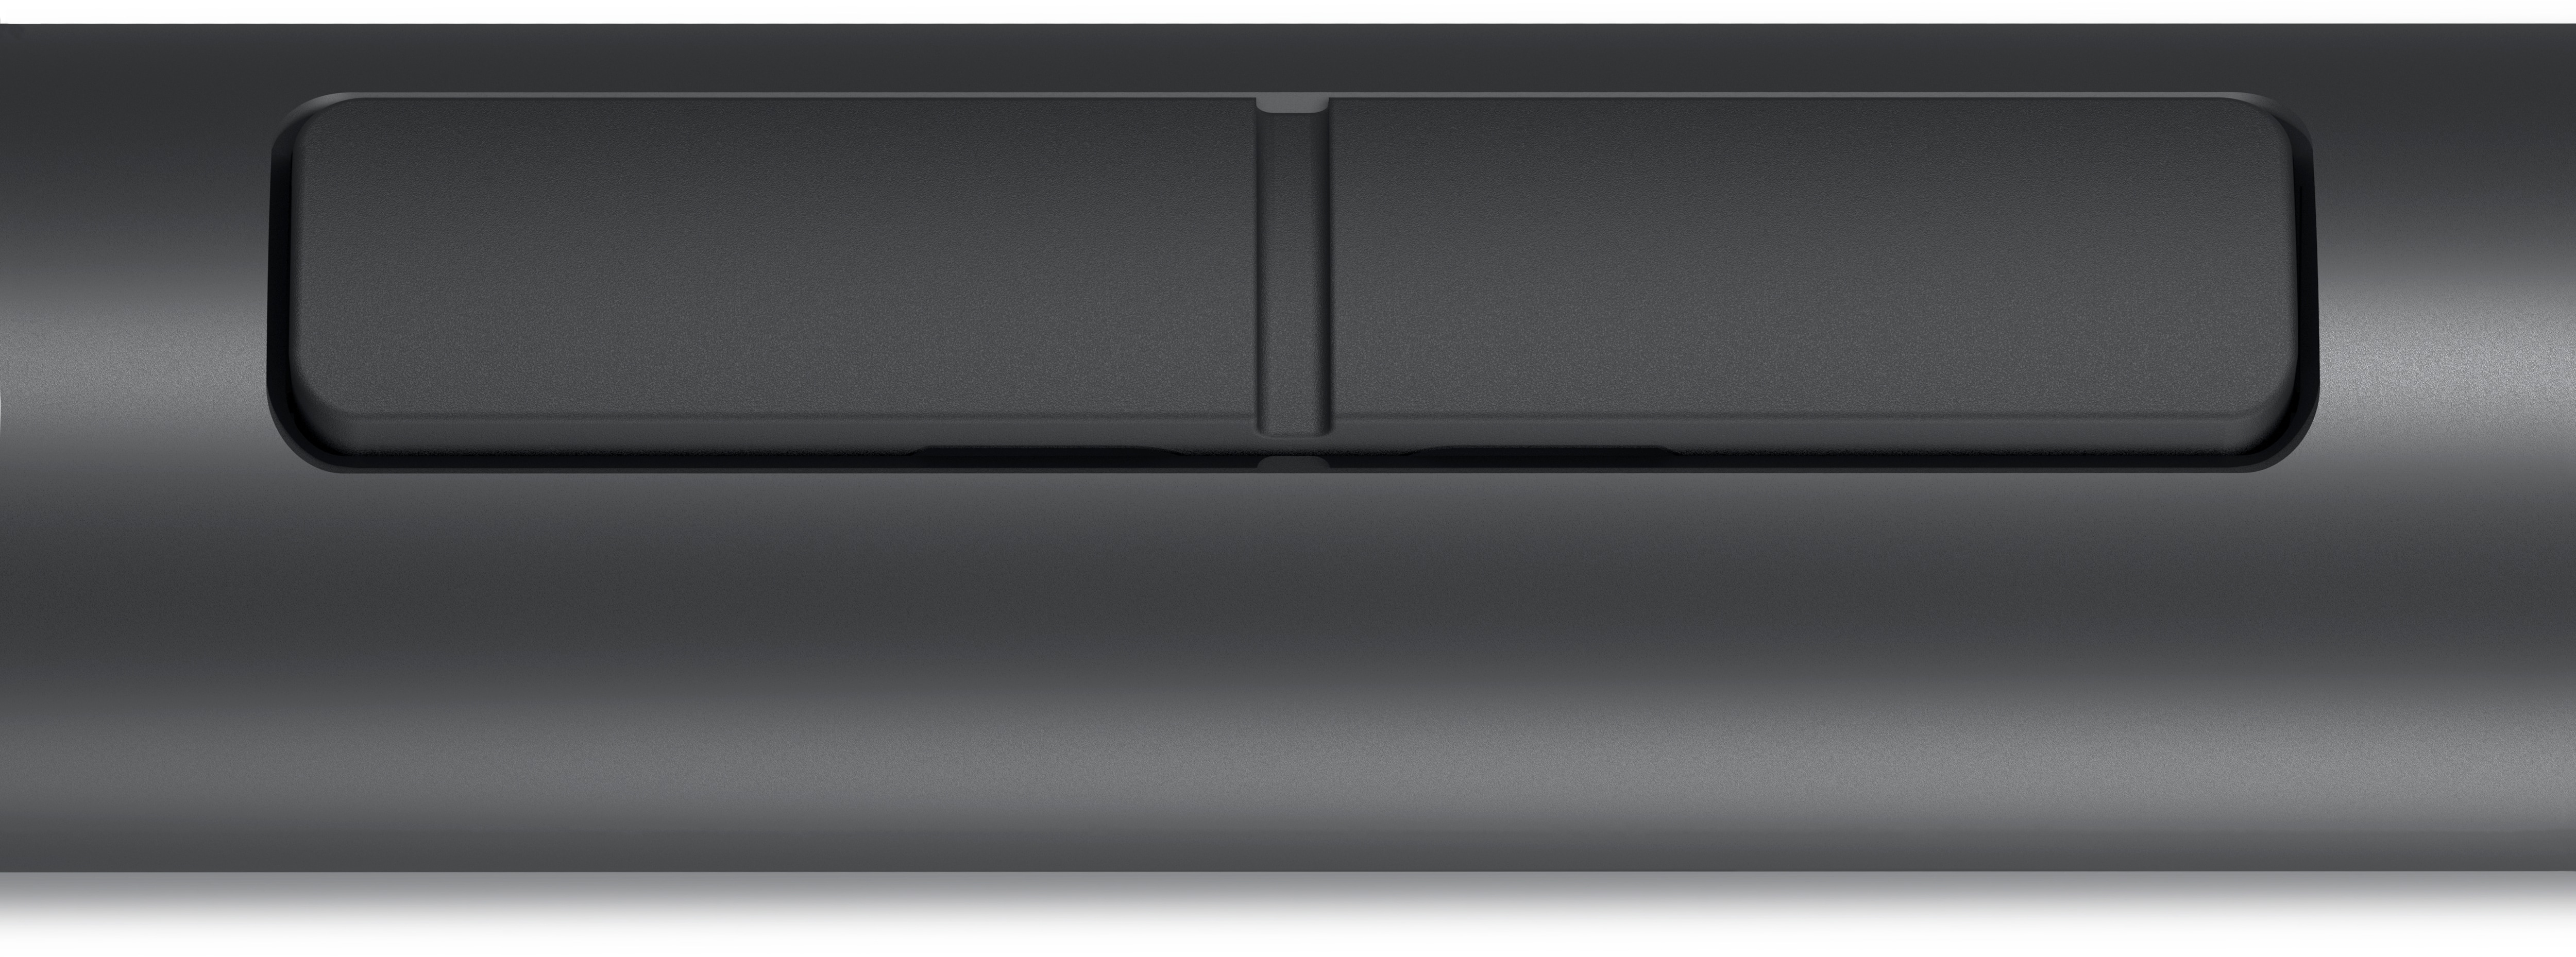 Dell PN5122W - Aktiver Stylus - 2 Tasten - Schwarz - weiße Box - mit 3 Years Warranty (AR - no warranty)